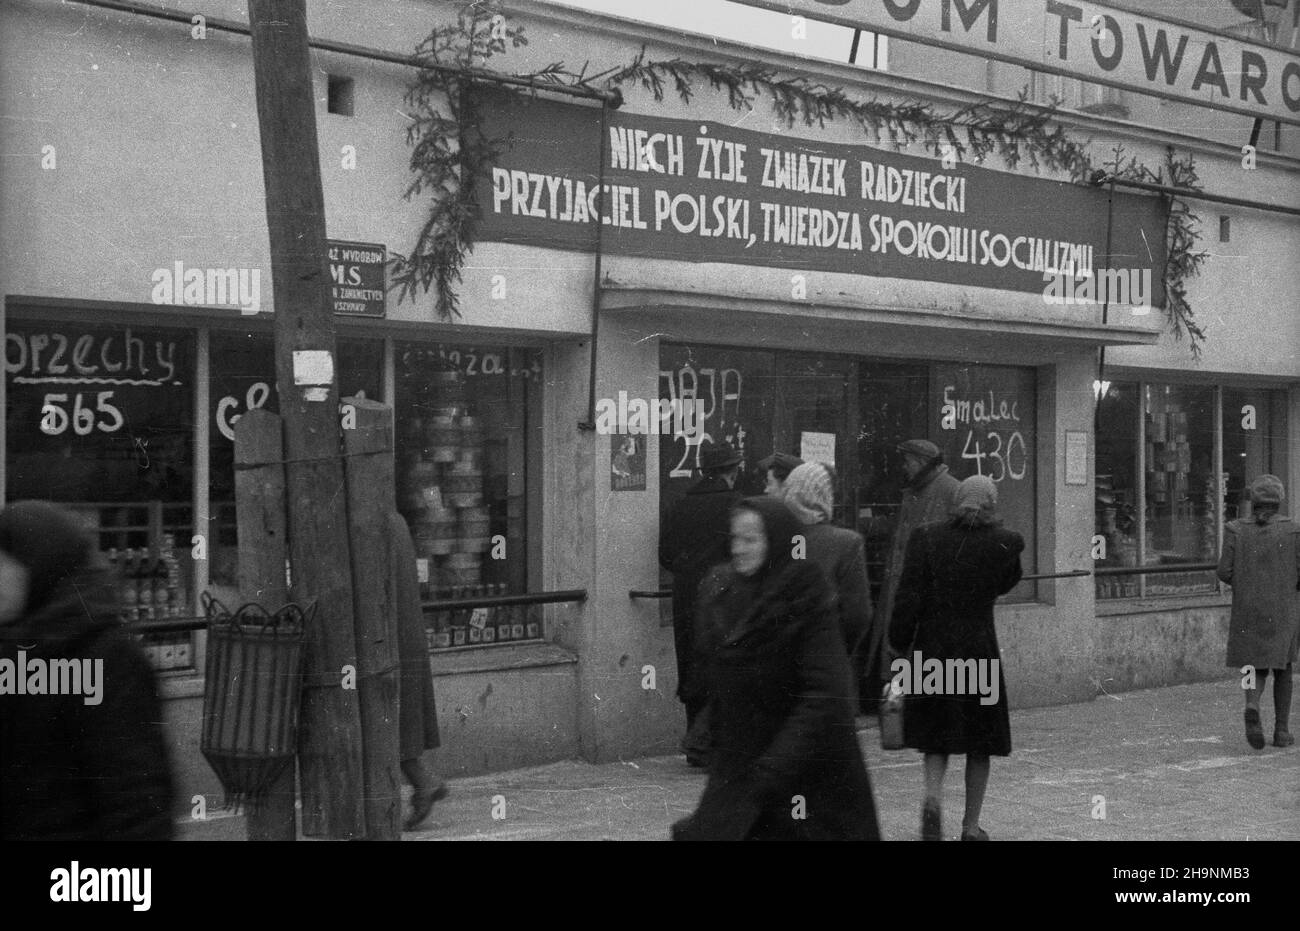 Warszawa, 1948-12. Pañstwowy Dom Towarowy (PDT) w Œródmieœciu. wb  PAP  Dok³adny dzieñ wydarzenia nieustalony.      Warsaw, Dec. 1948. Christmas shopping at the PDT state department store in the city center.   wb  PAP Stock Photo